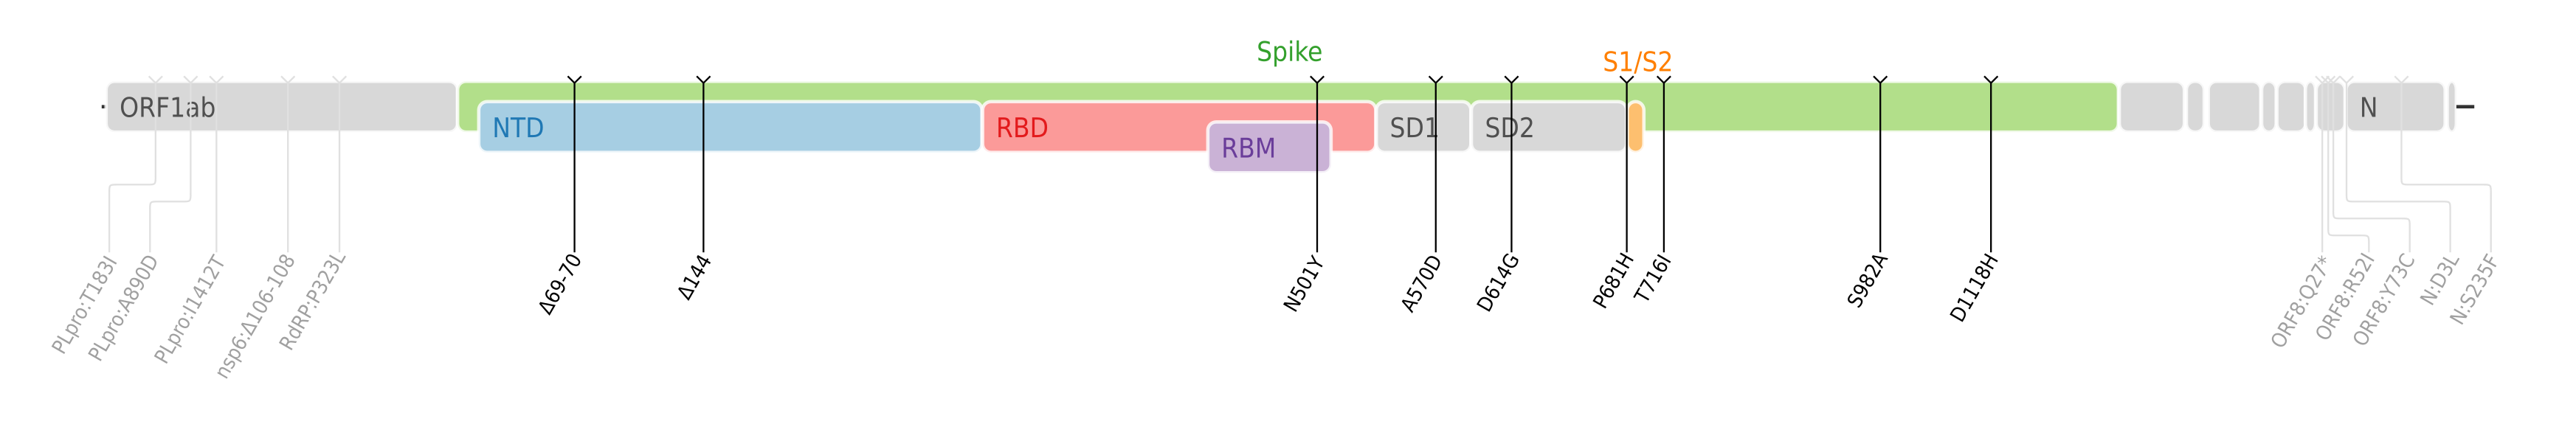 SARS-CoV-2 阿尔法变异株的氨基酸突变绘制在SARS-CoV-2的基因组图上[12]